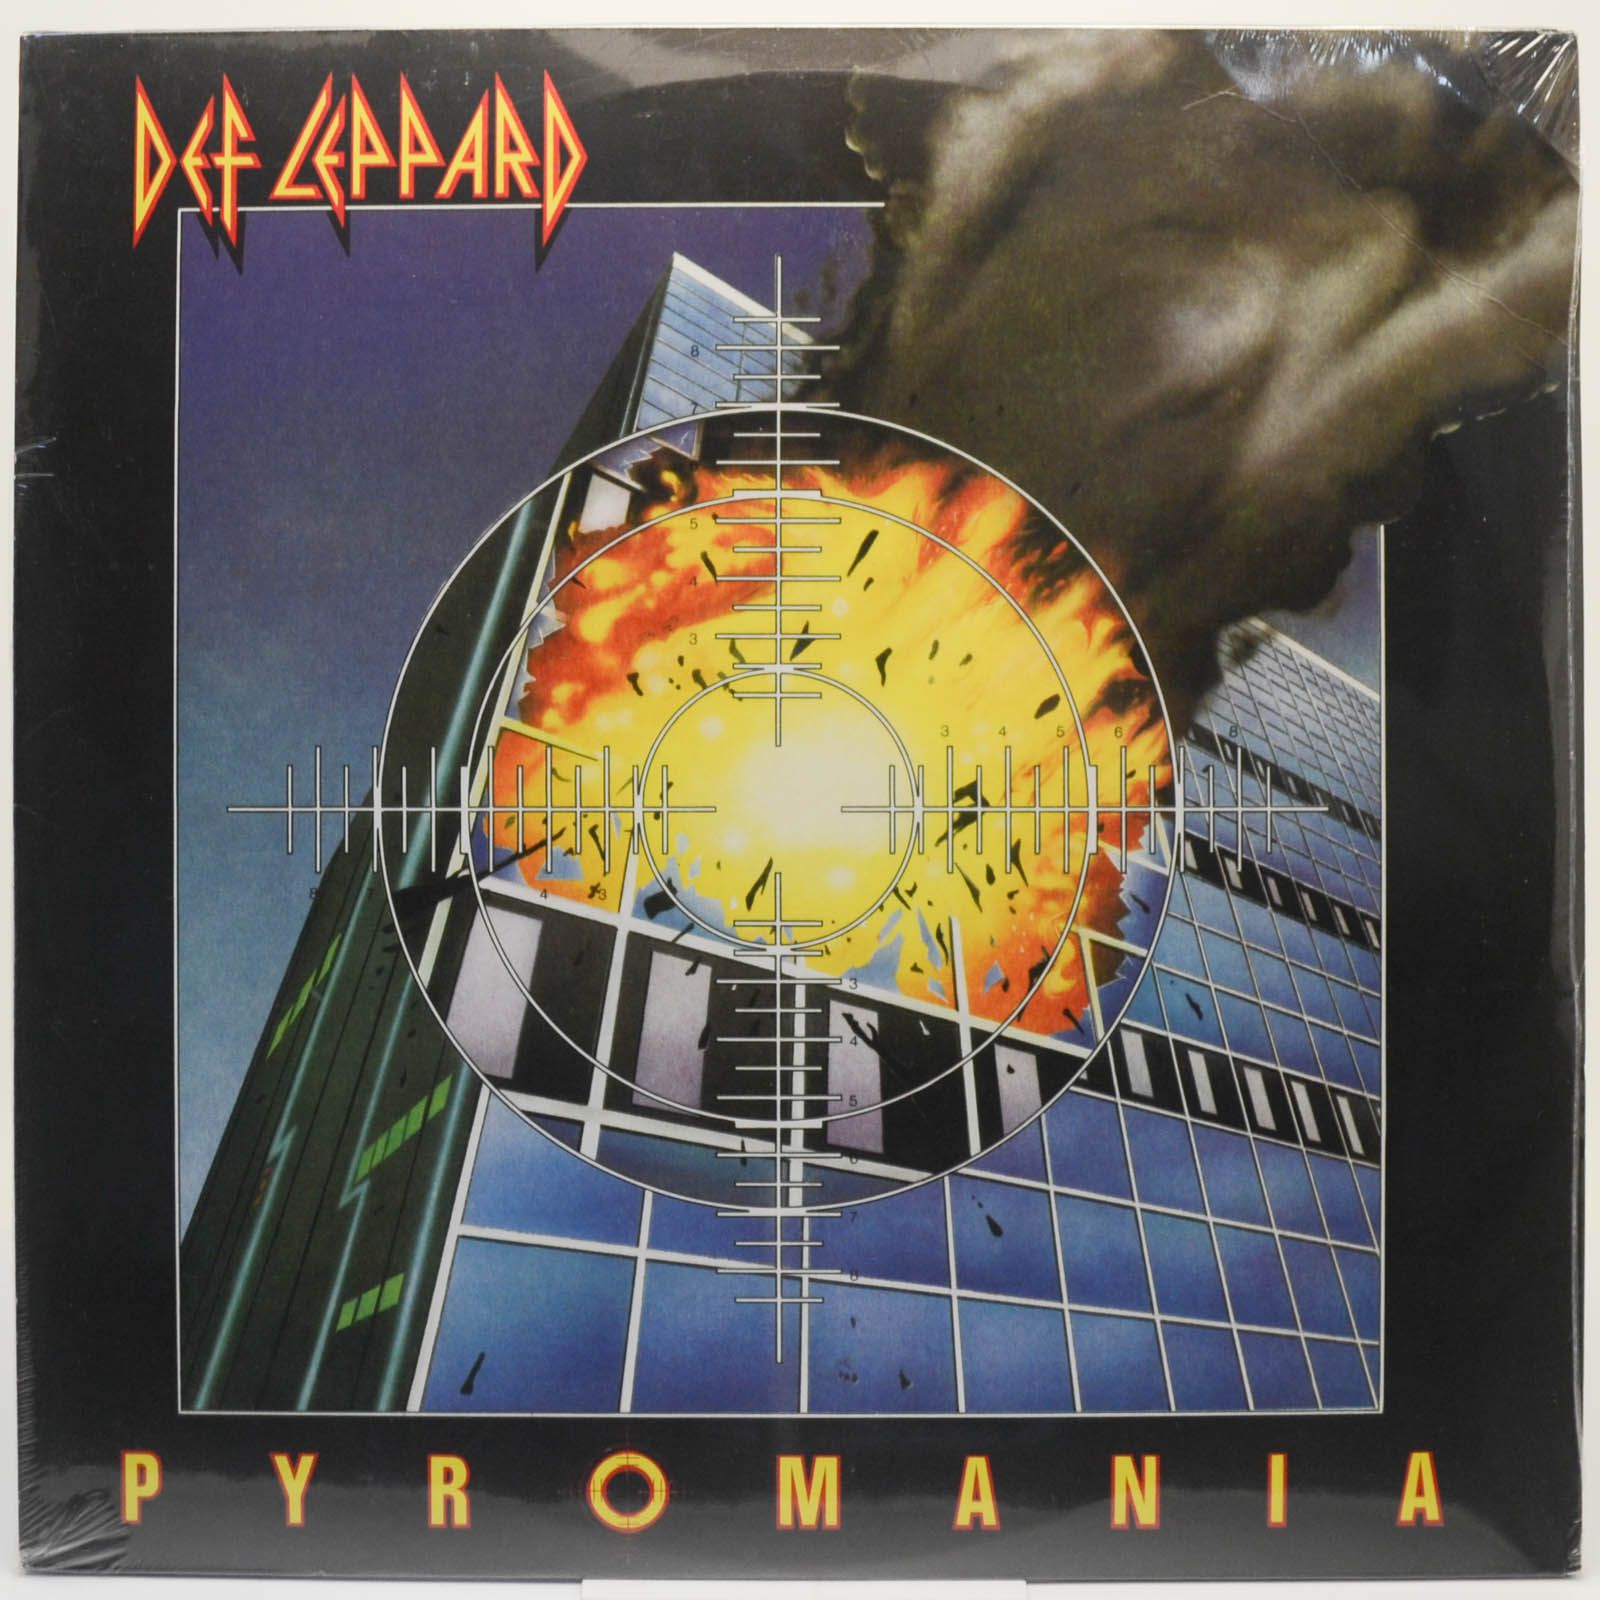 Def Leppard — Pyromania, 1983